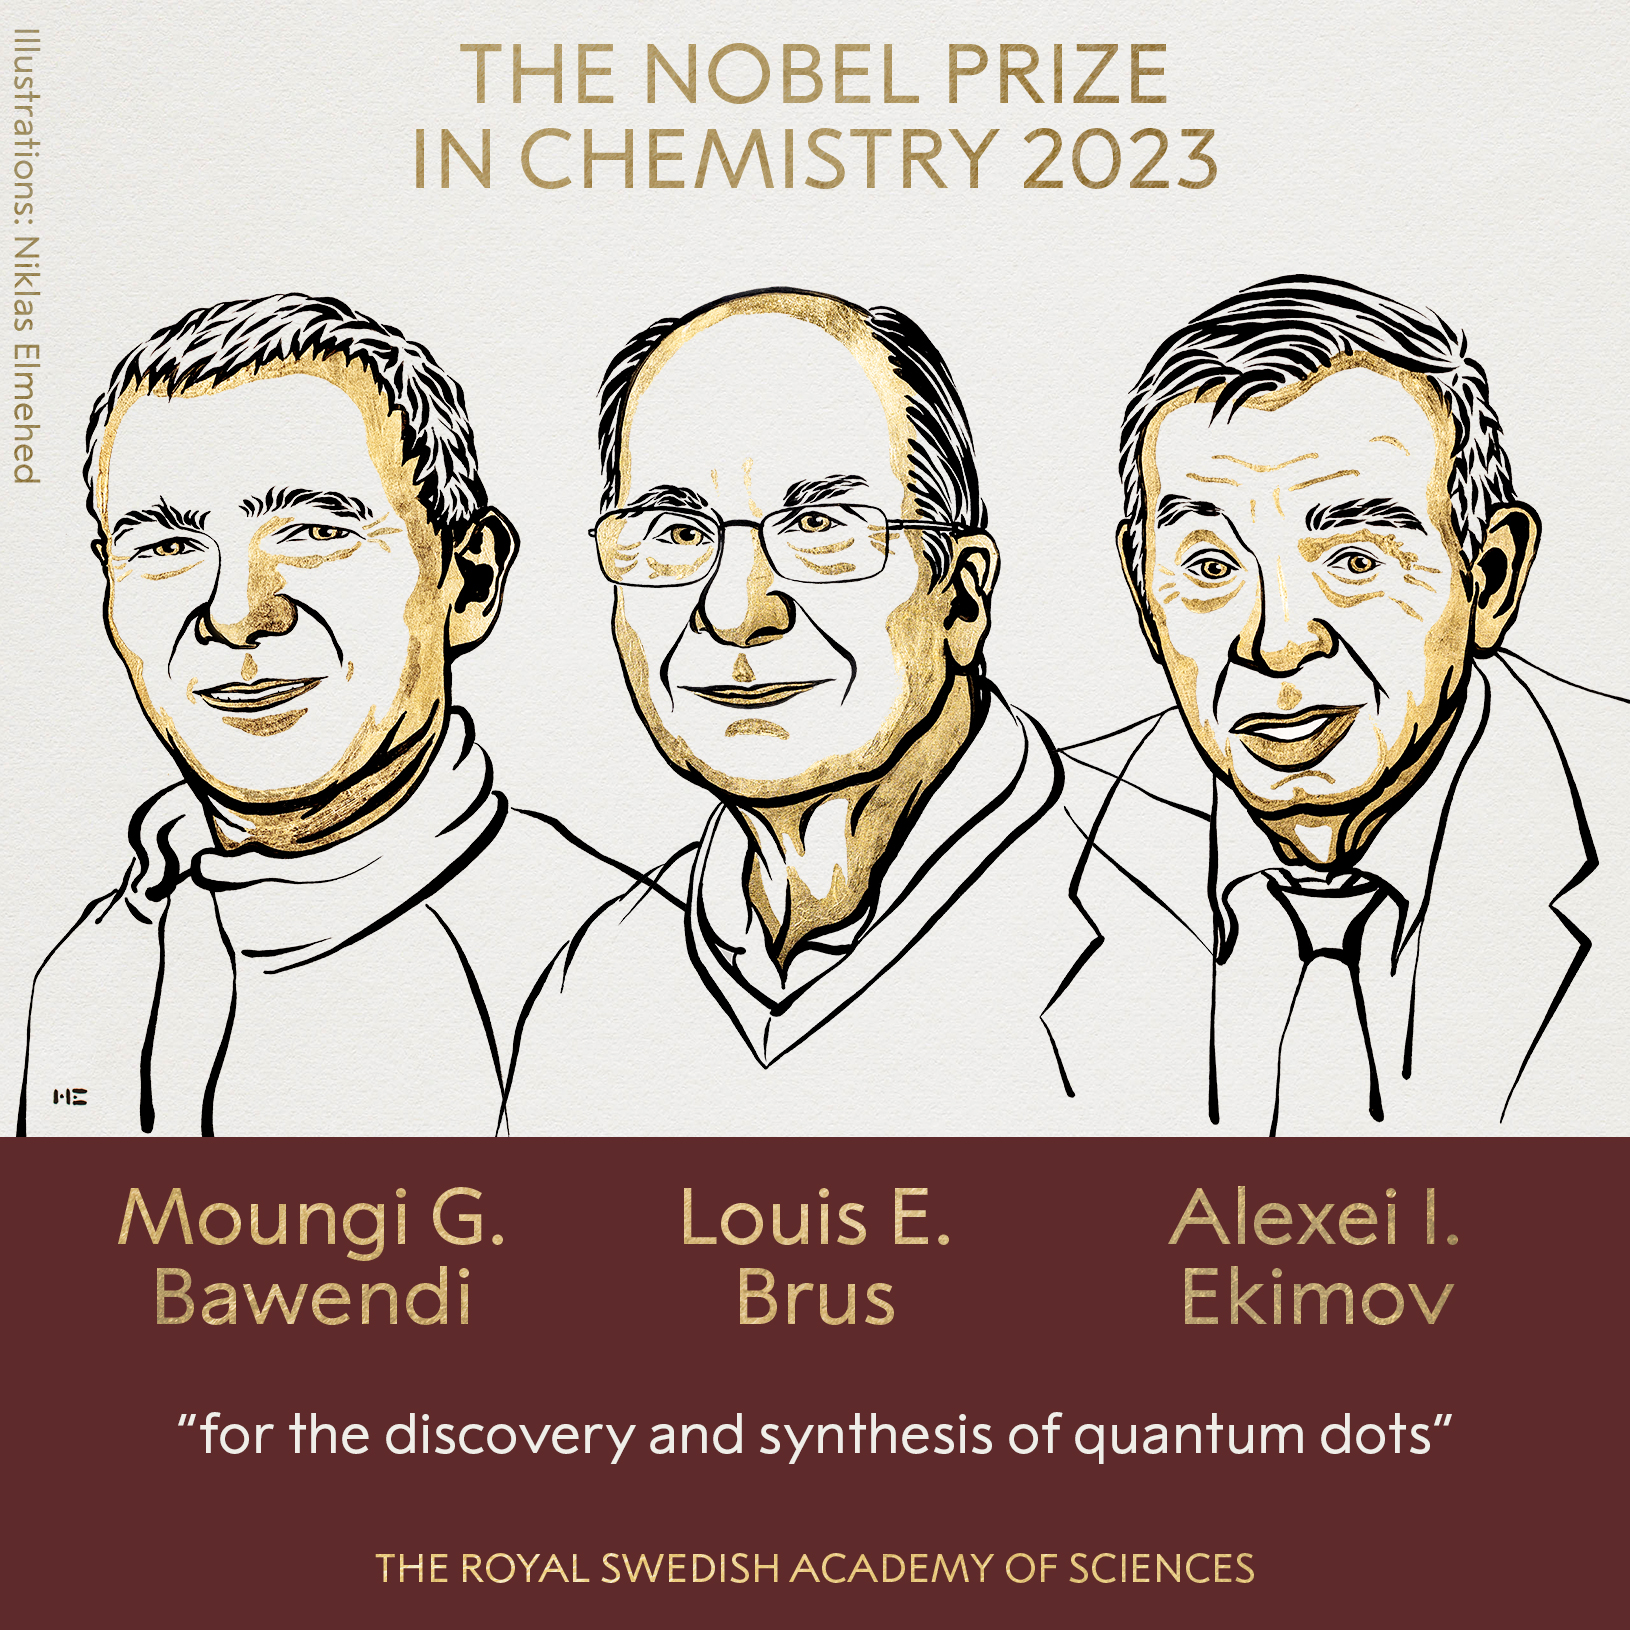 Los científicos Moungi G. Bawendi, Louis E. Brus y Alexei I. Ekimov.